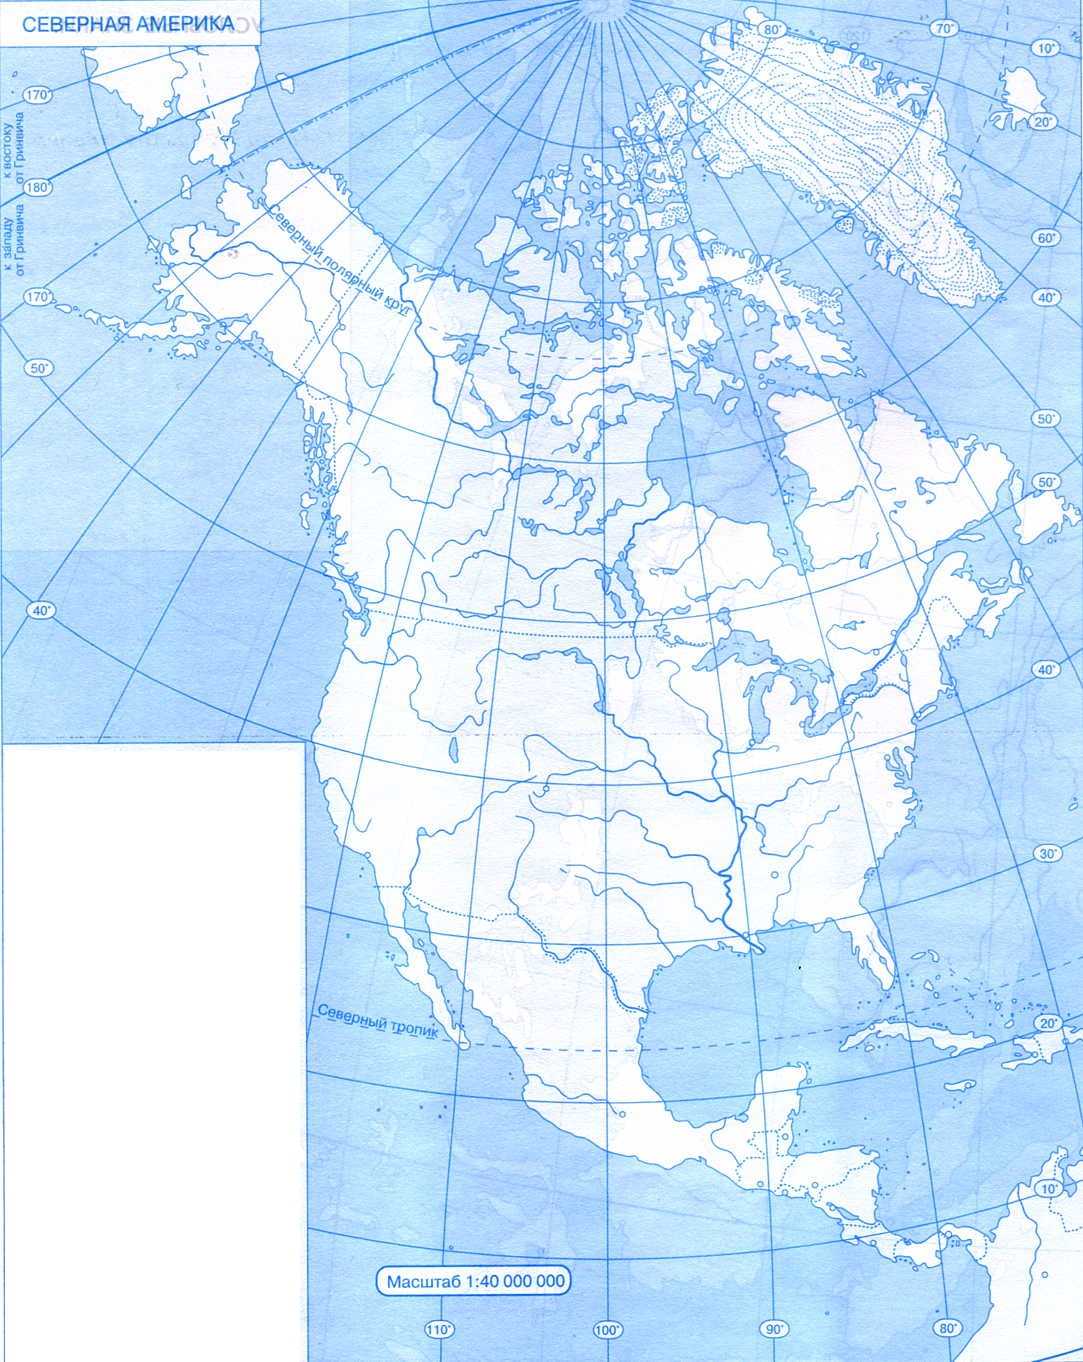 Характеристика карты северная америка. Карта Северной Америки контурная карта. Контурная ката Северной Омерики\. Контурная карта севернойтамерики. Контурная карта севеонойа мерики.